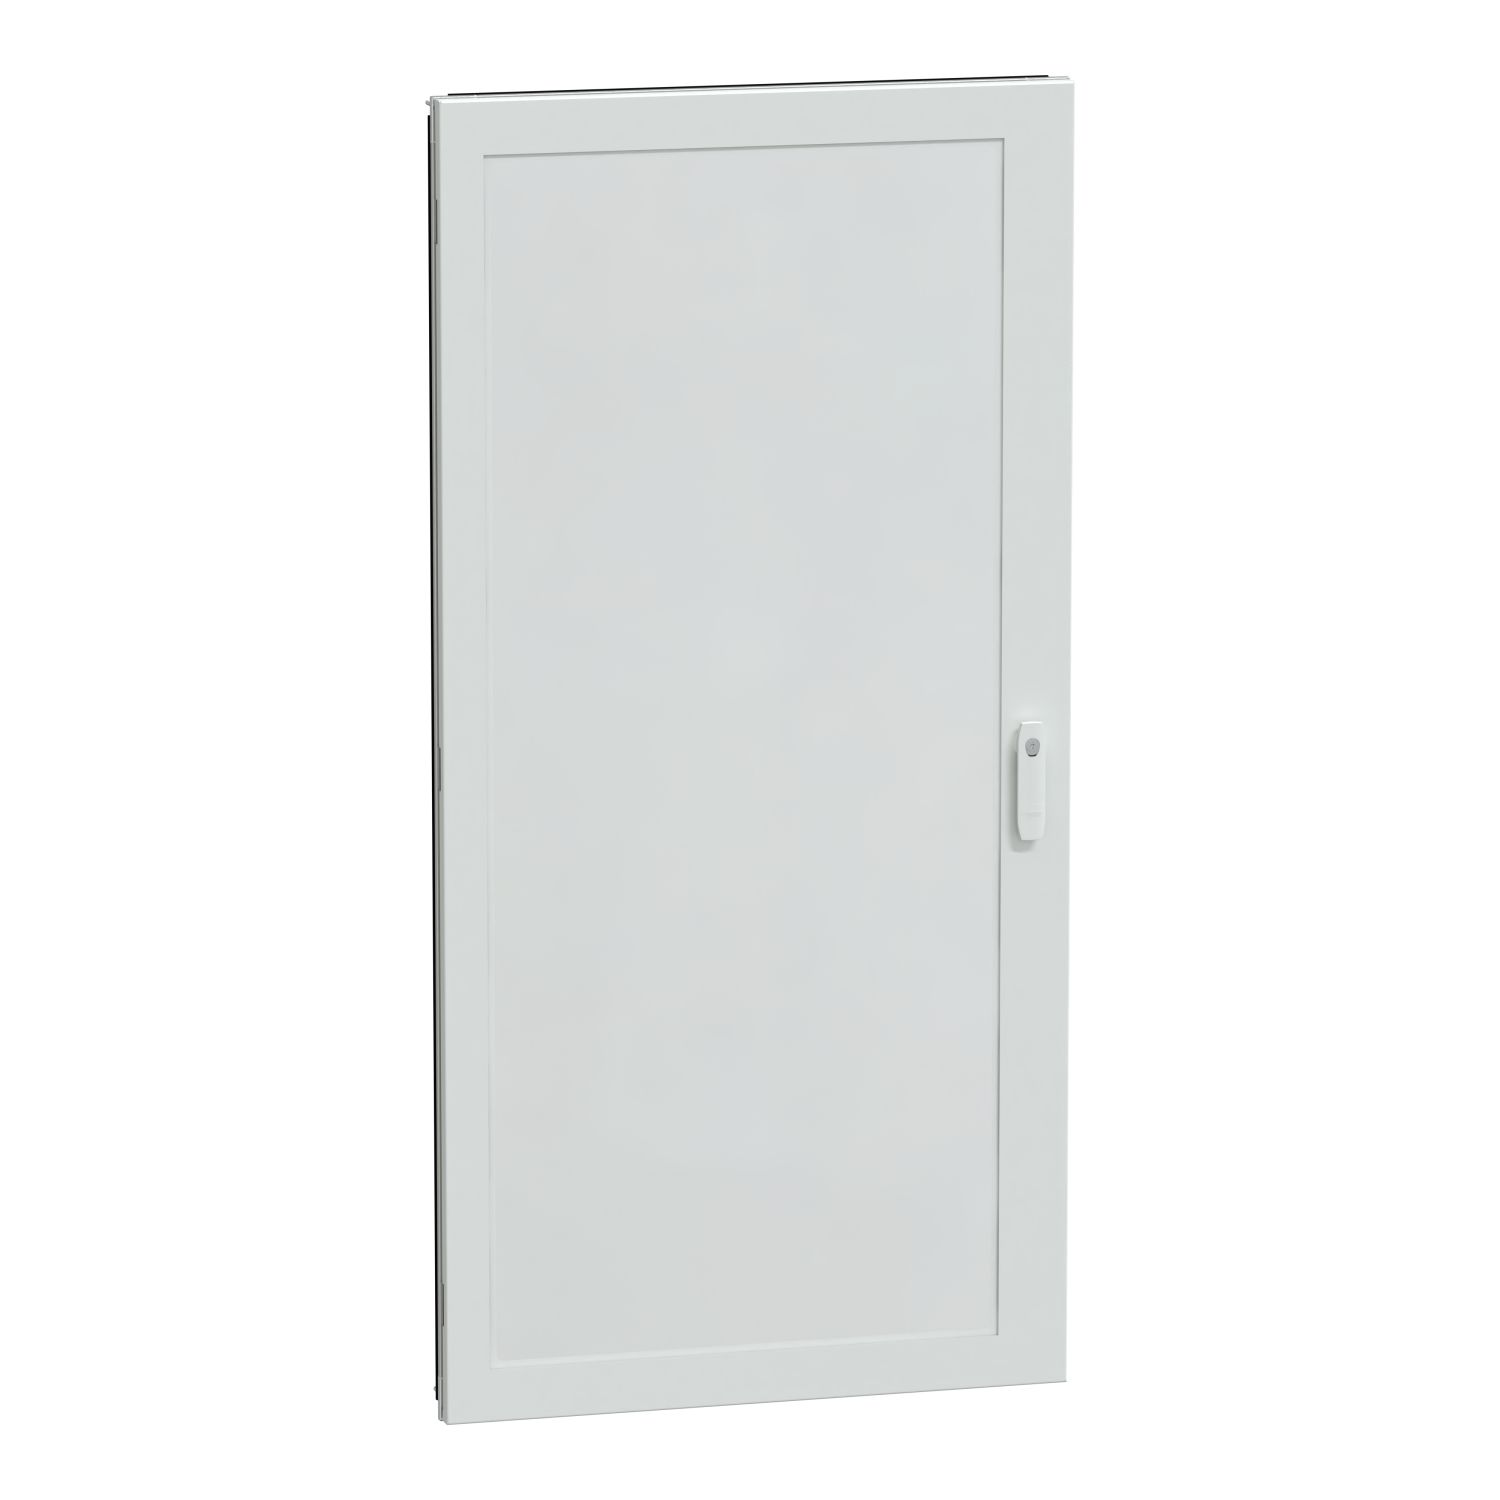 Átlátszó ajtó g szekrény IP55 W850